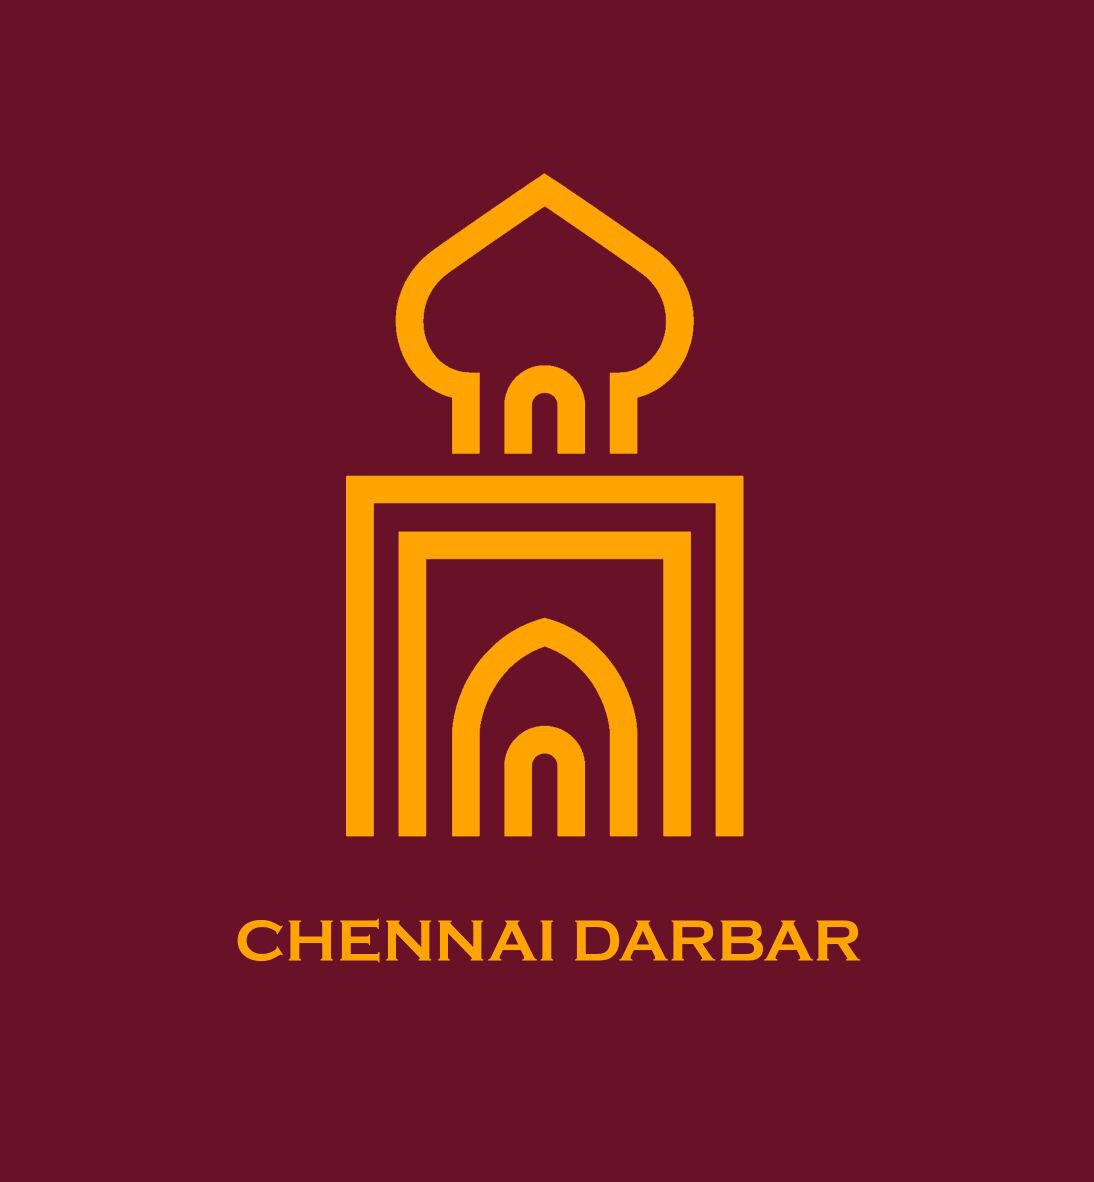 Chennai Darbar Restaurant